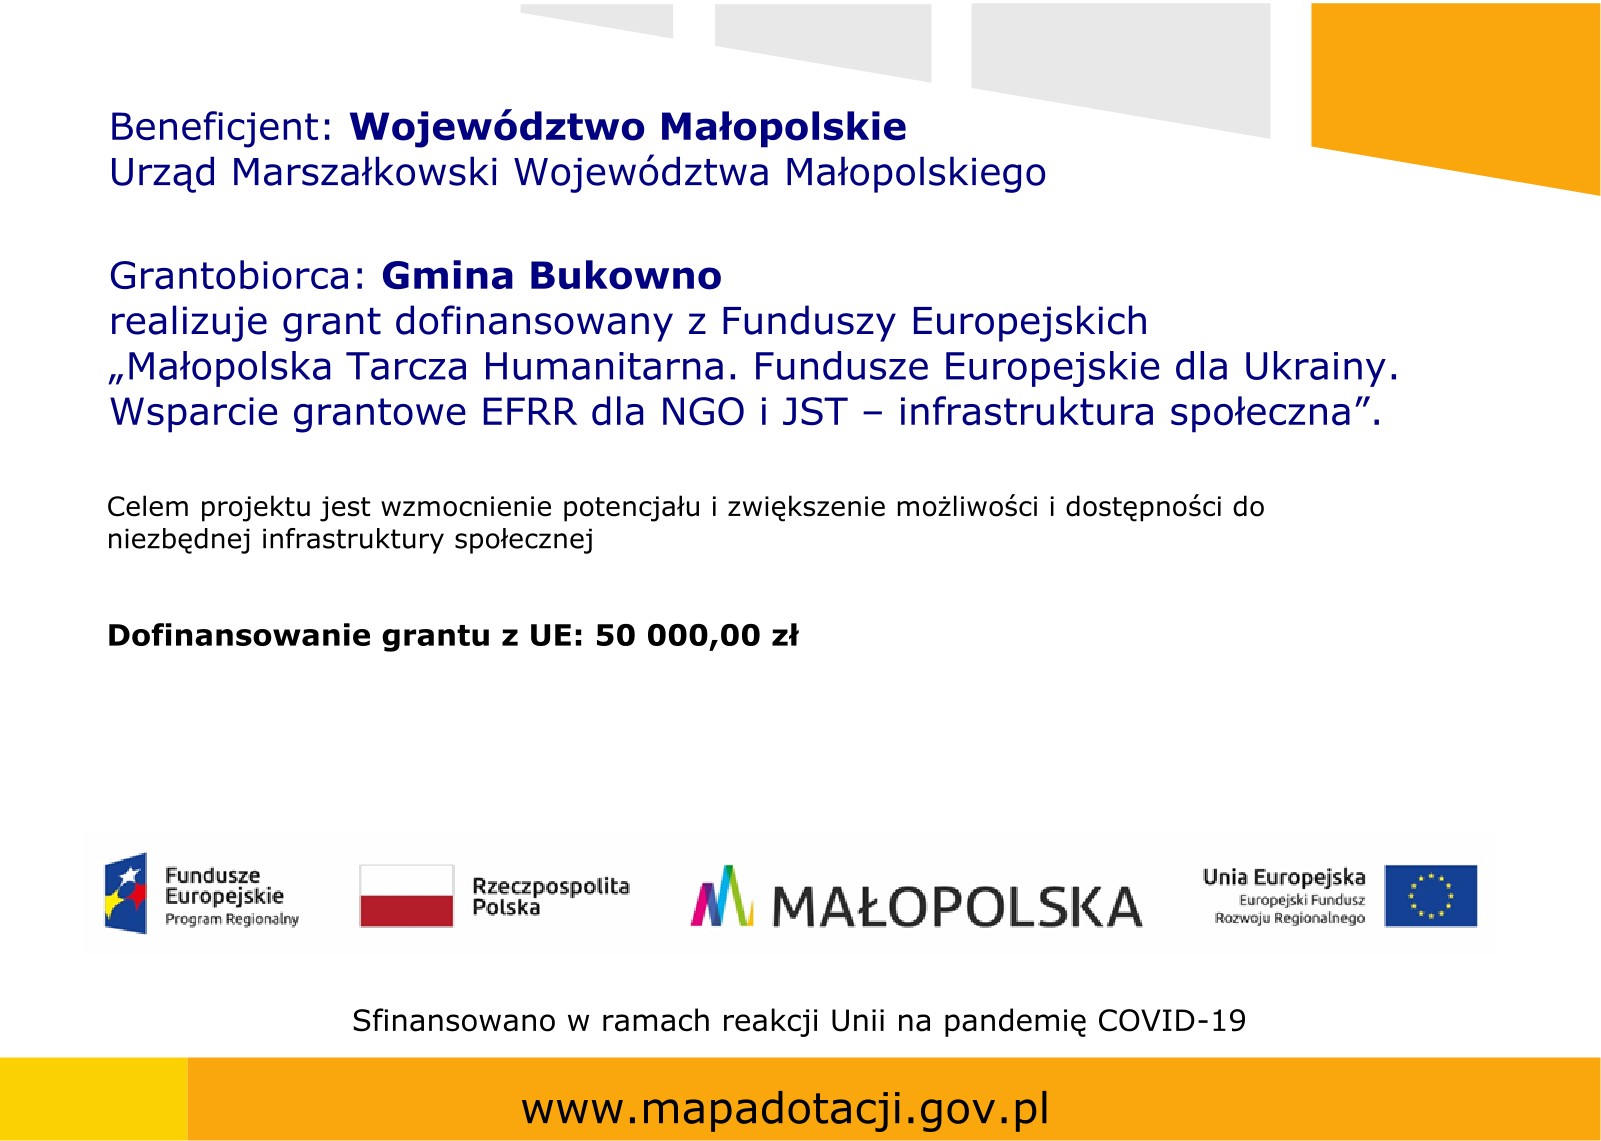 Małopolska Tarcza Humanitarna. Fundusze Europejskie dla Ukrainy. Wsparcie grantowe EFRR dla NGO i JST – infrastruktura społeczna